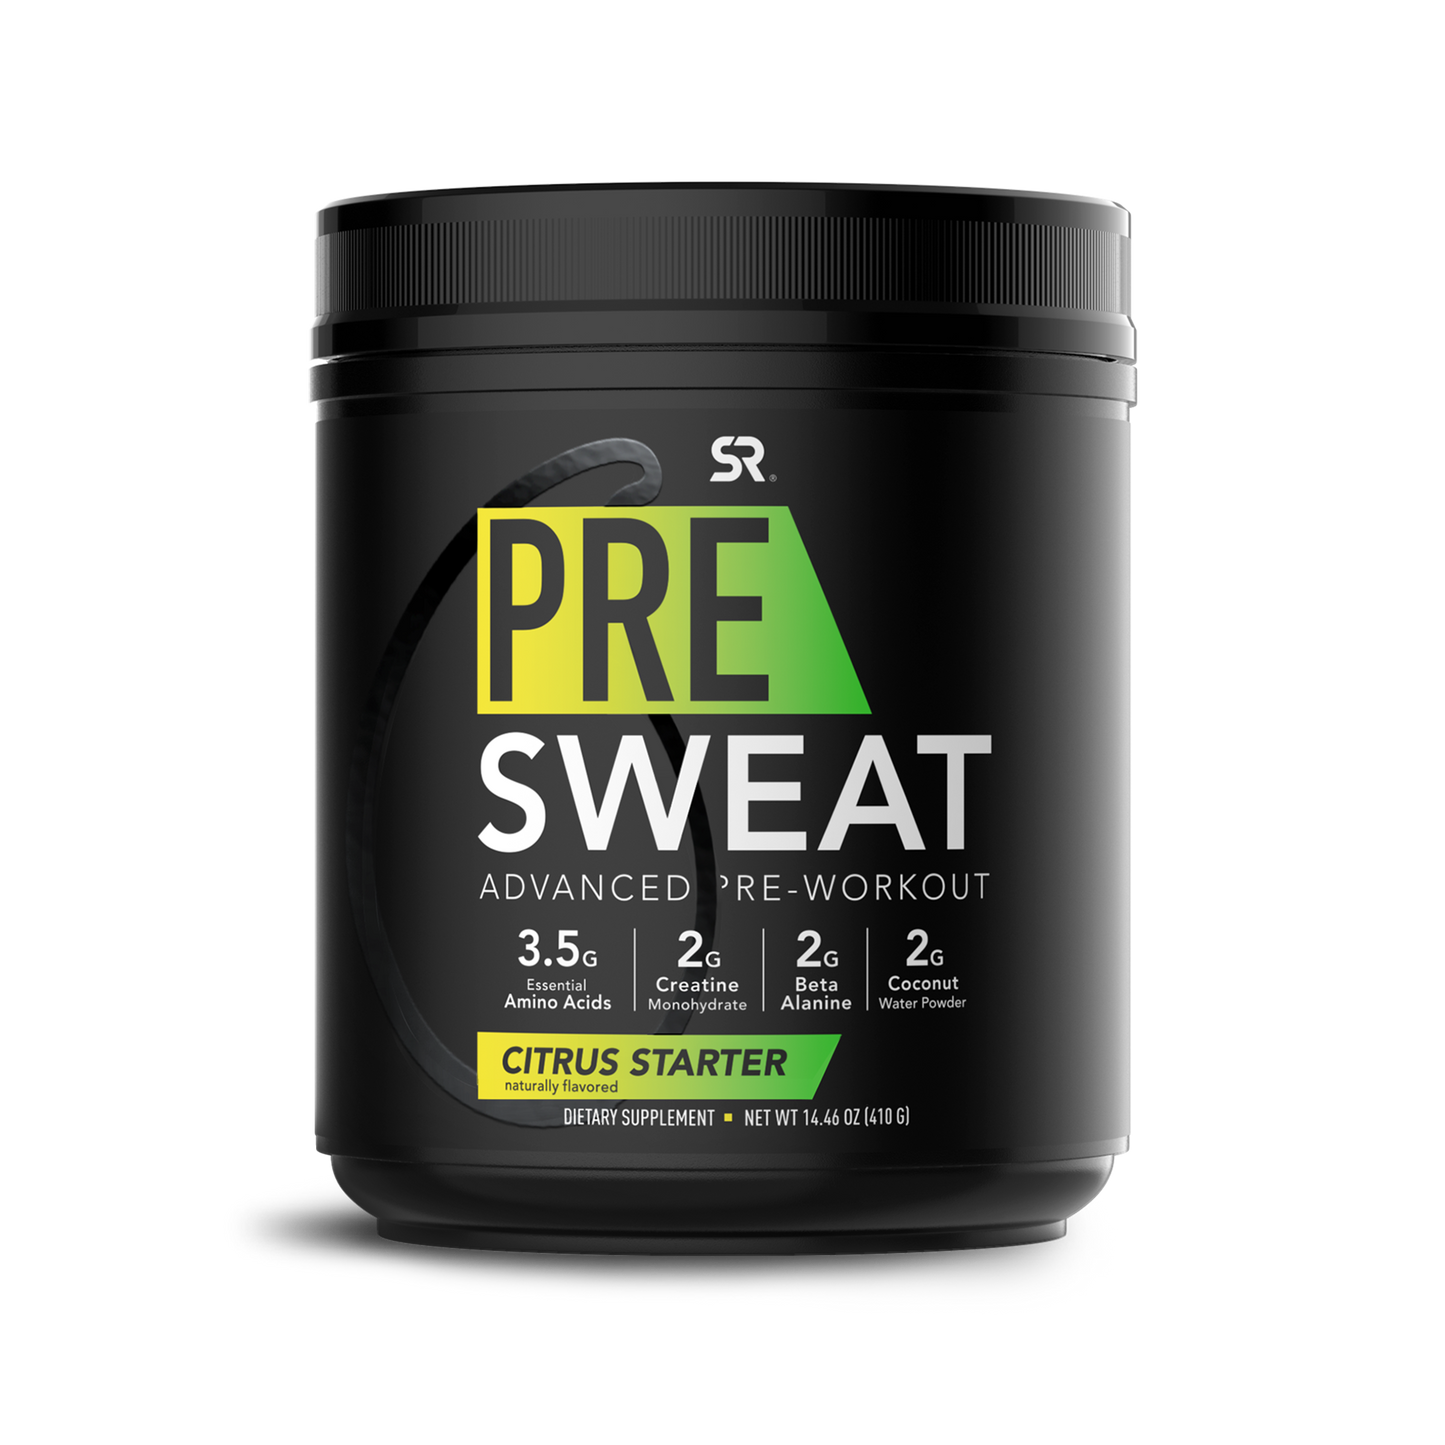 Pre Sweat Advanced Pre-Workout Powder 14.46 oz